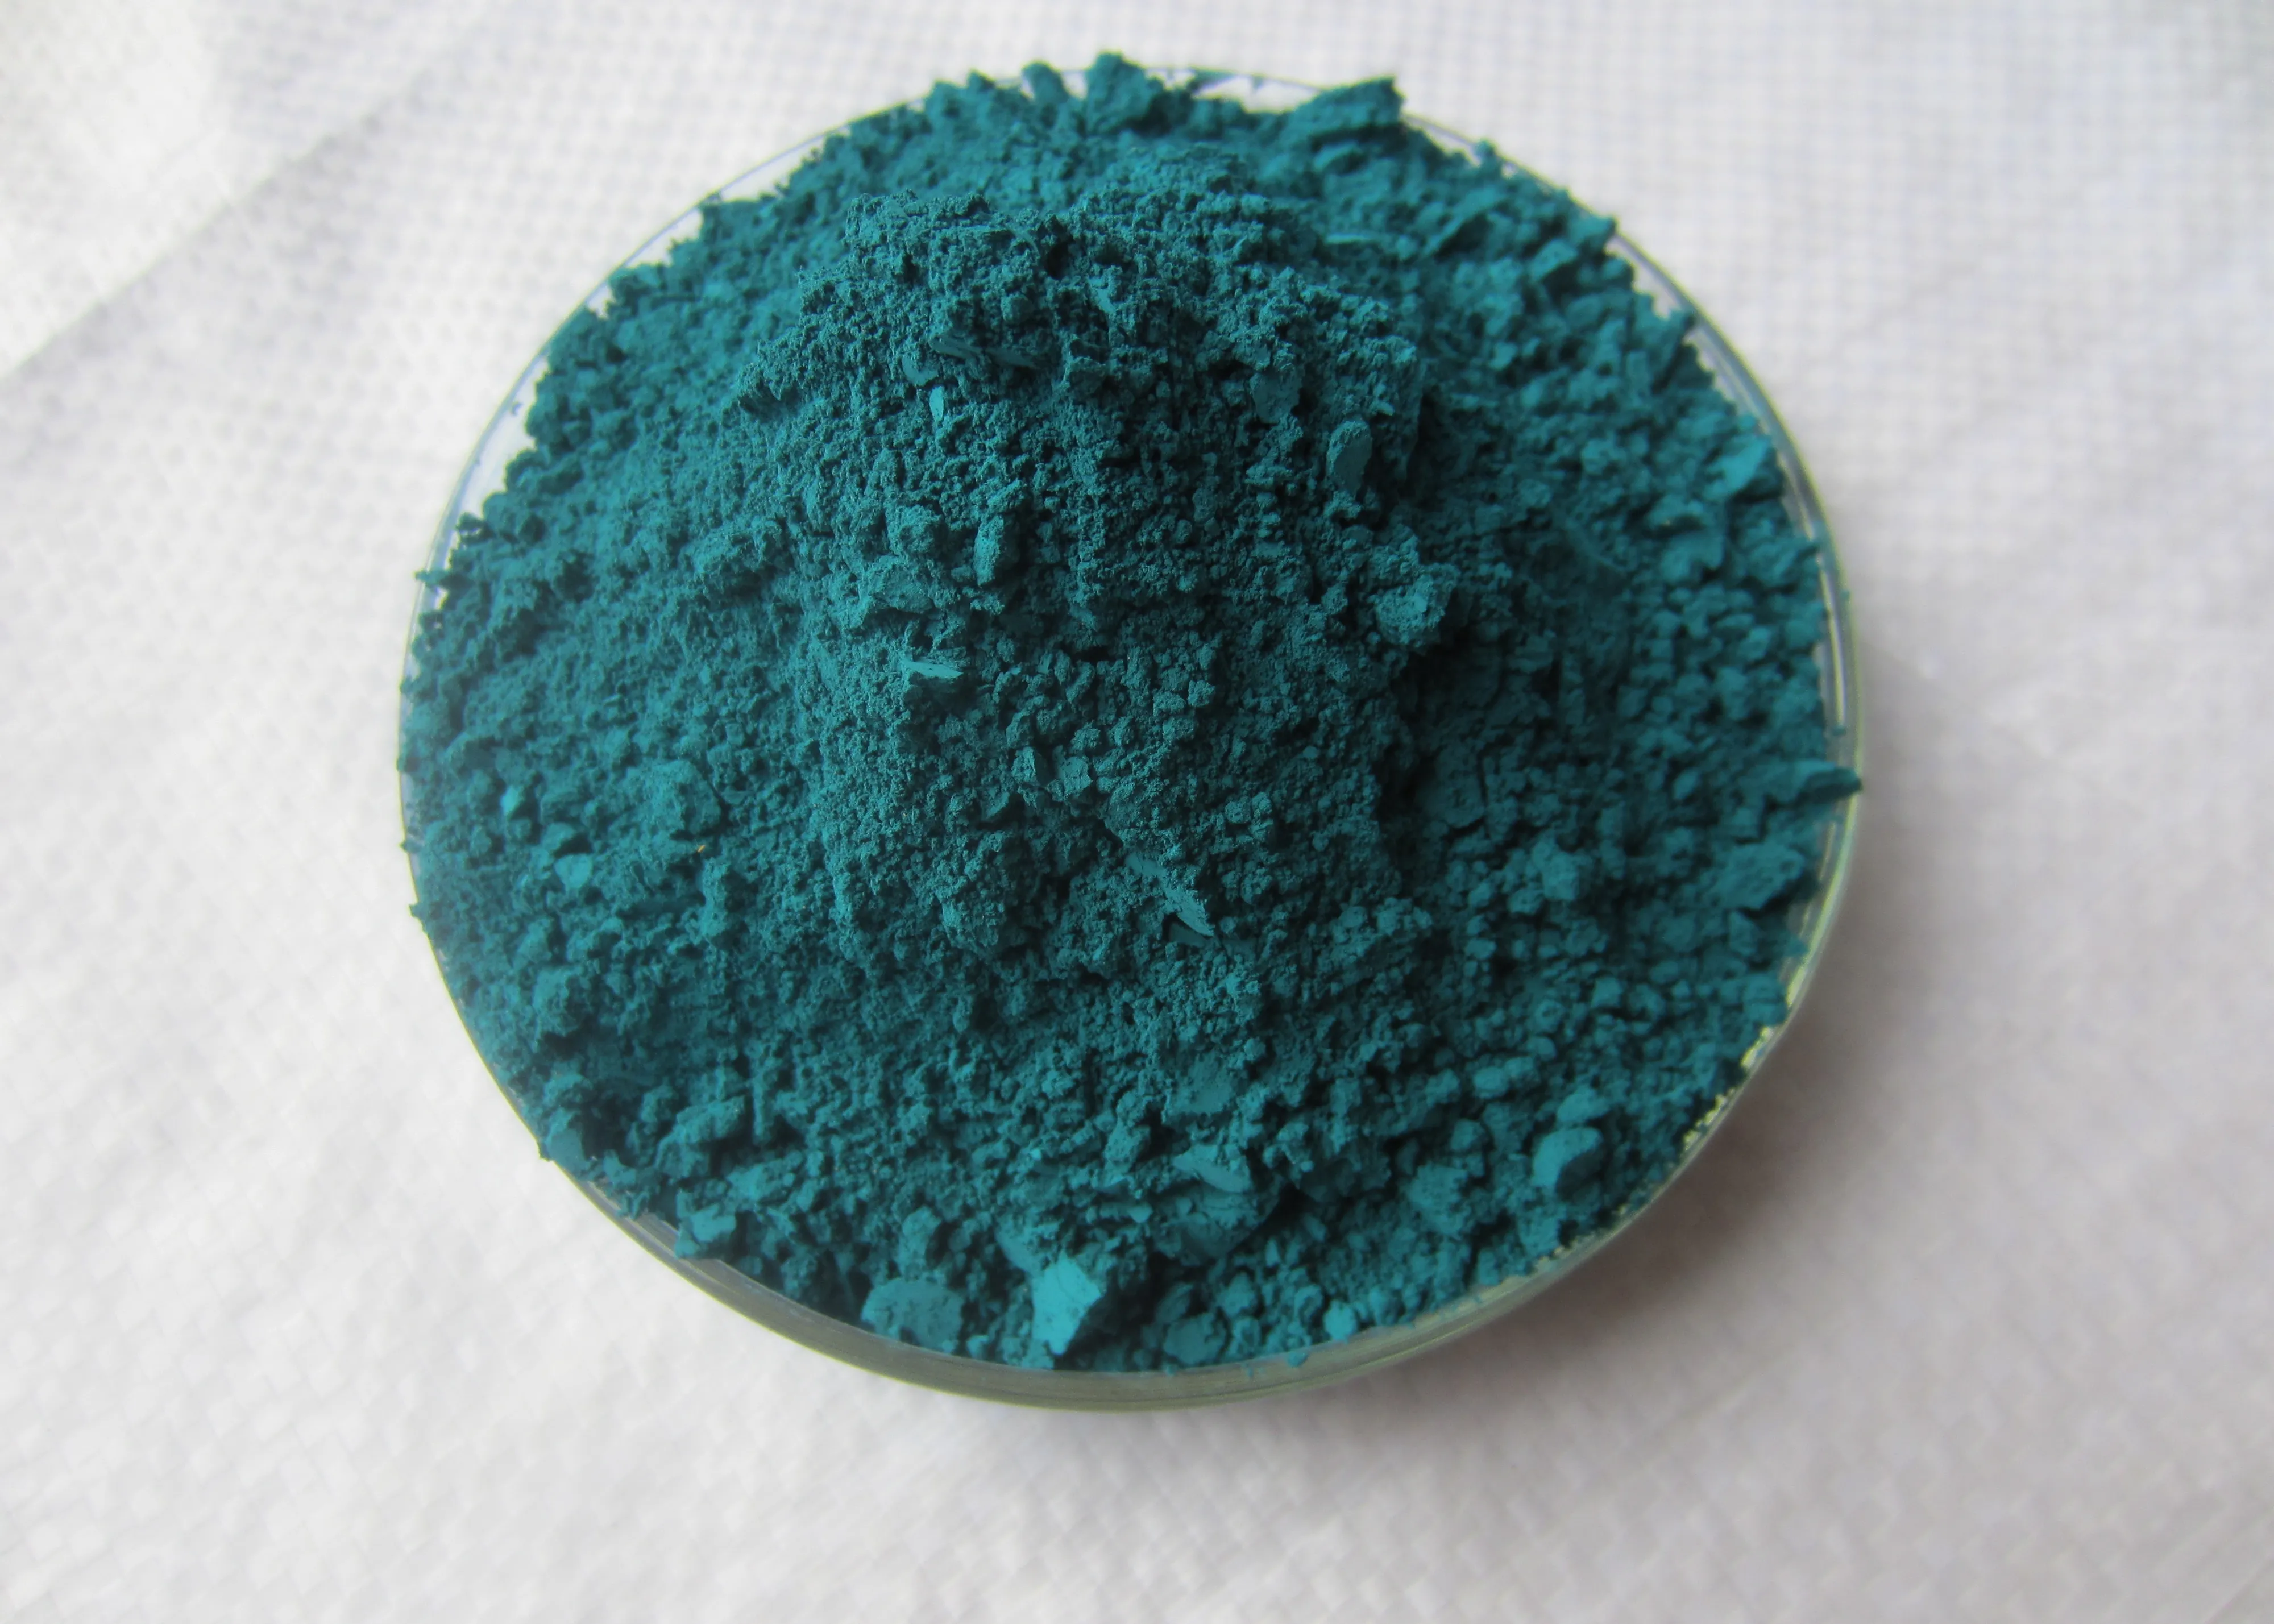 Cobalt chromium blue